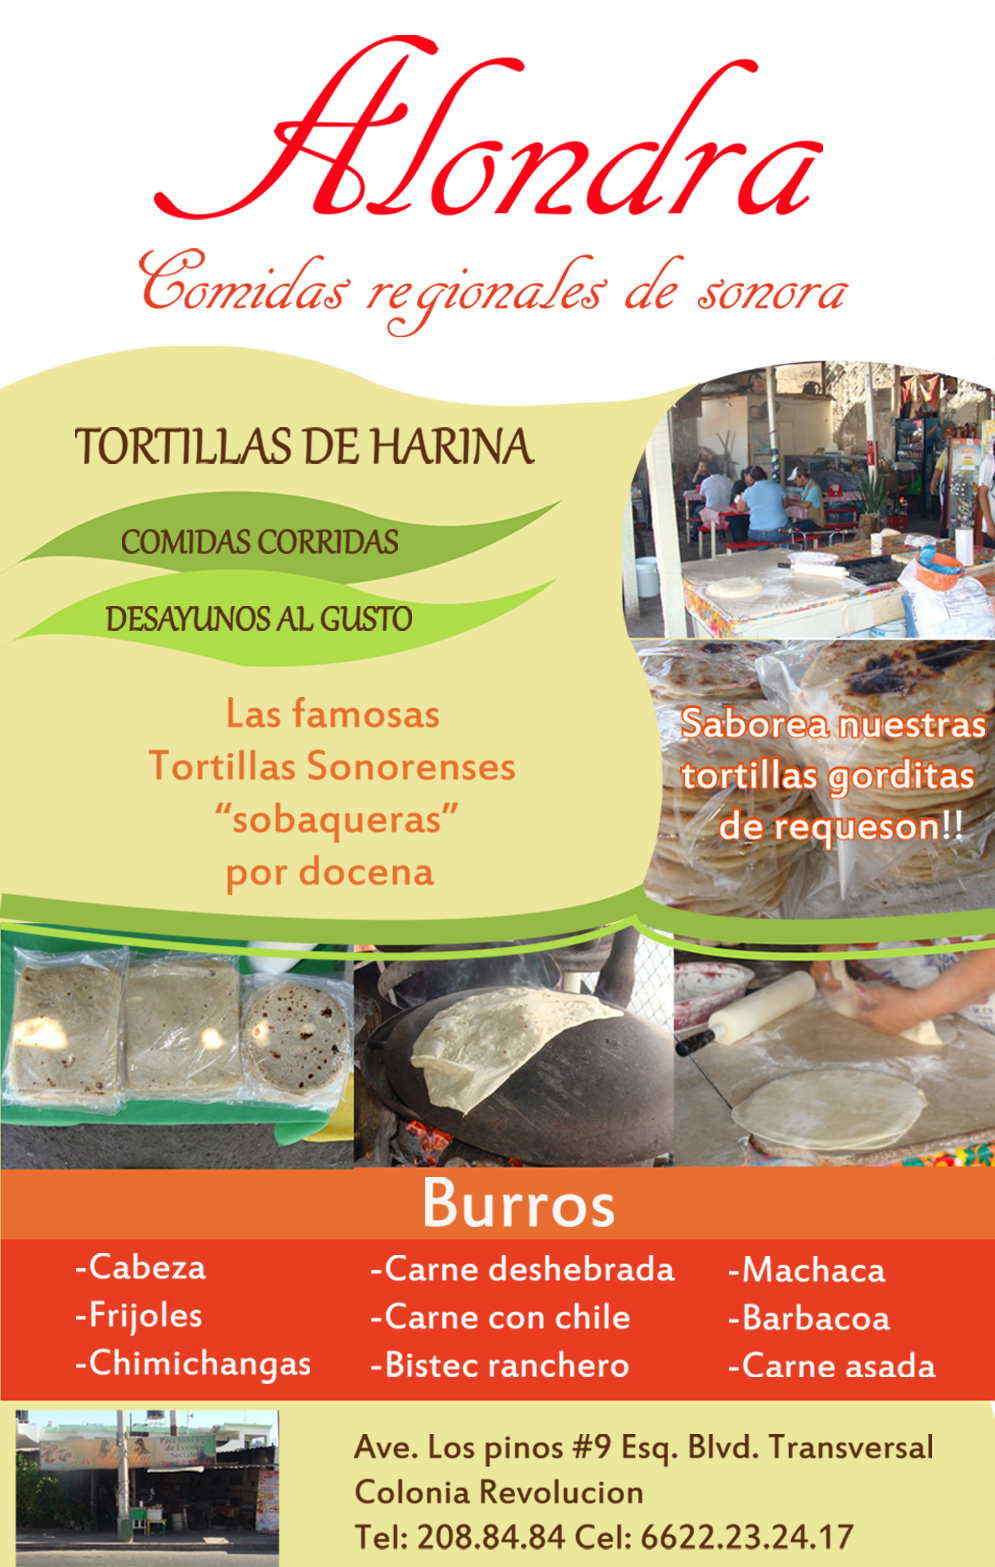 ALONDRA COMIDAS REGIONALES DE SONORA-Si usted busca  el verdadero sazón sonorense , solo aquí con Alondra,   comidas regionales de sonora.        